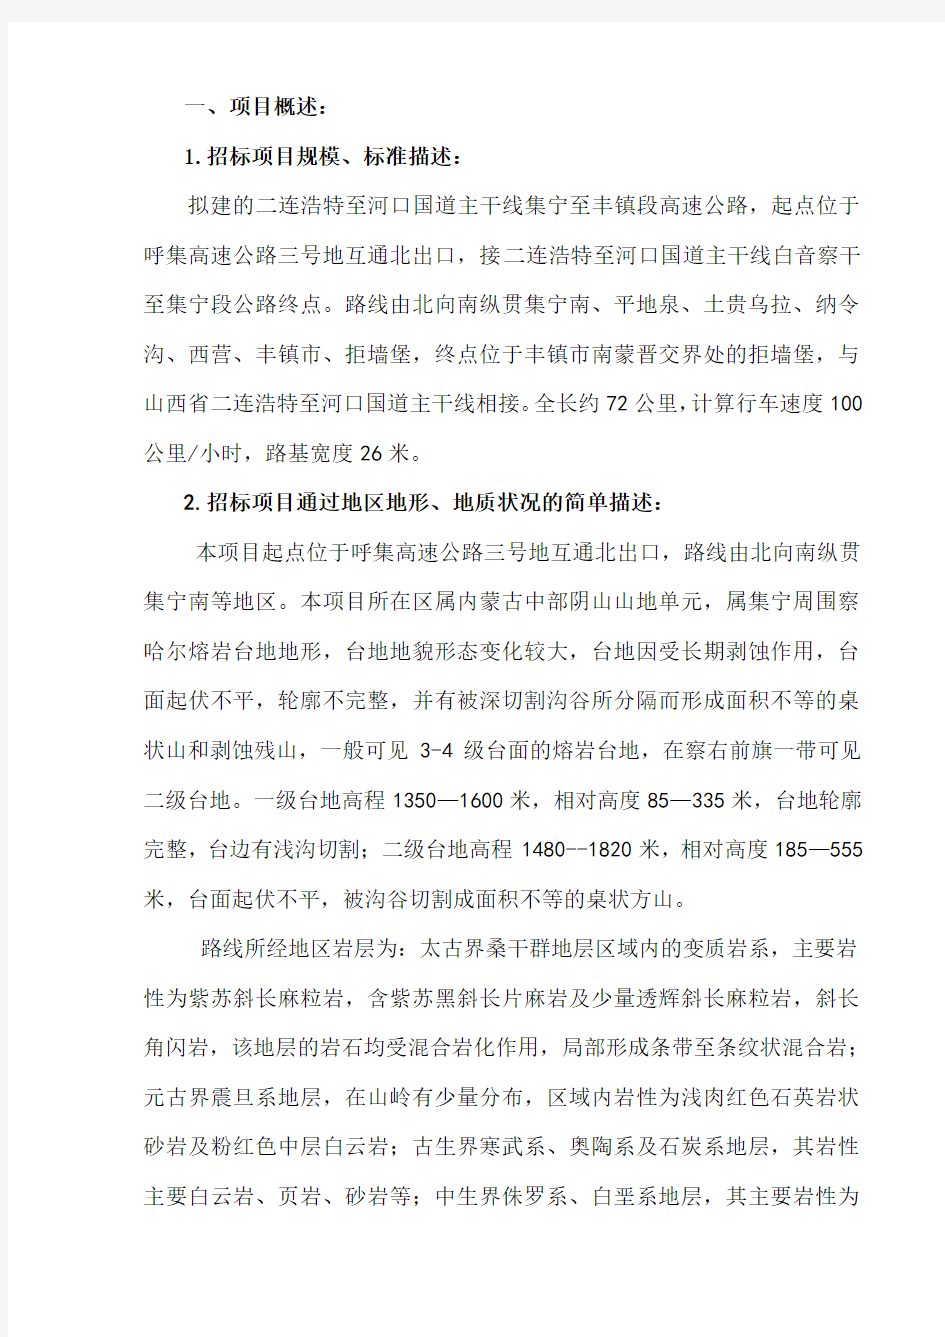 中华人民共和国集宁至丰镇高速公路勘察设计招标评标报告 hhh